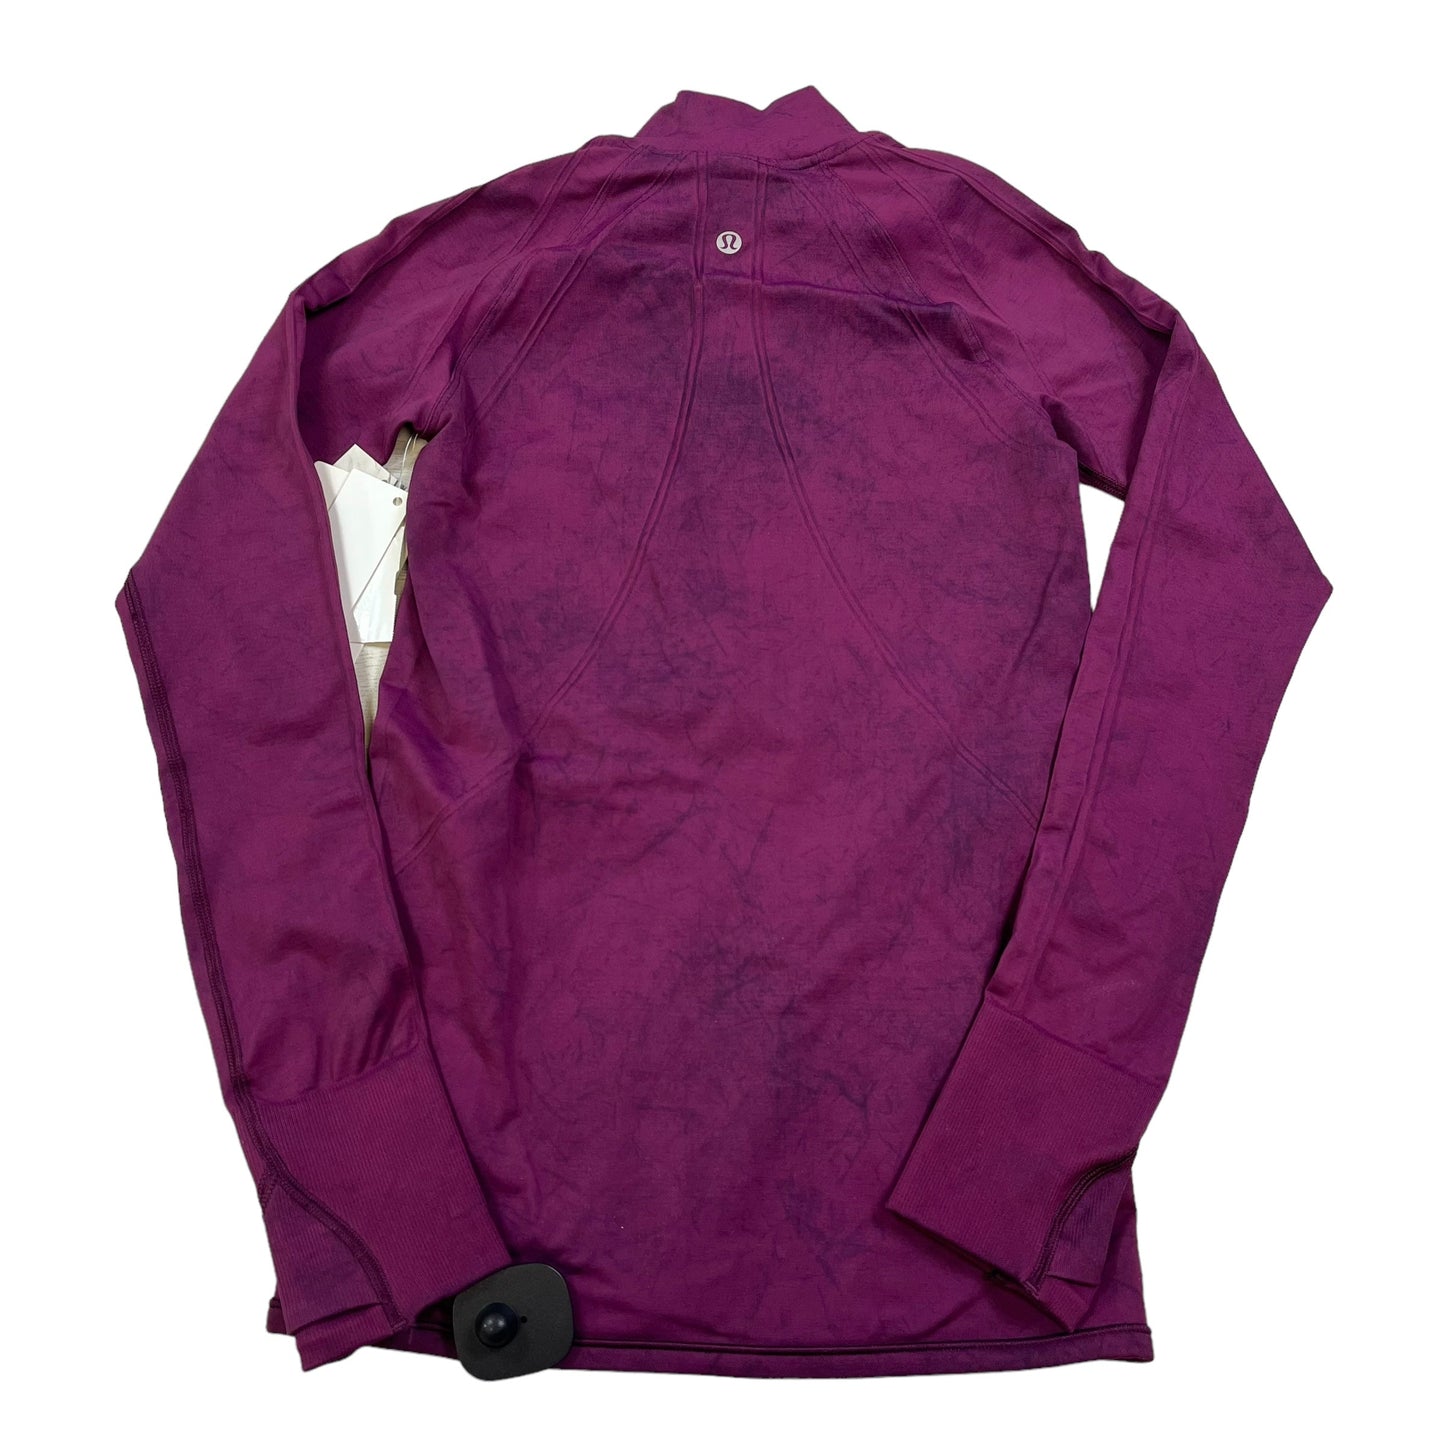 Purple Athletic Jacket Lululemon, Size Xs